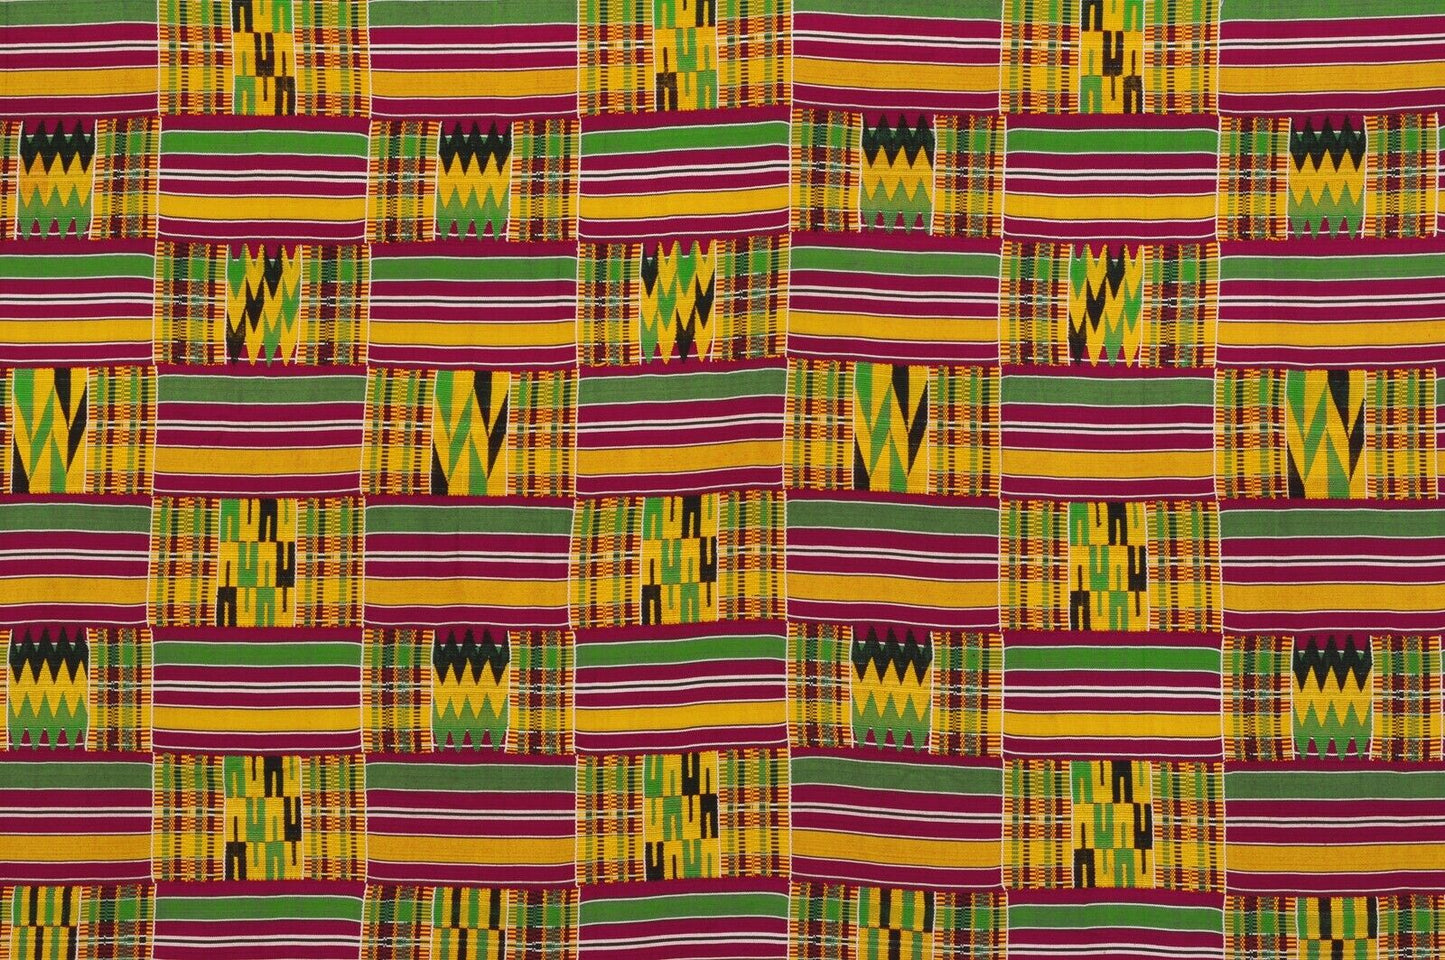 ΣΠΑΝΙΟ ΣΧΕΔΙΟ Αφρικανικό Kente υφαντό ύφασμα Ashanti Asante Akan Ghana - Tribalgh